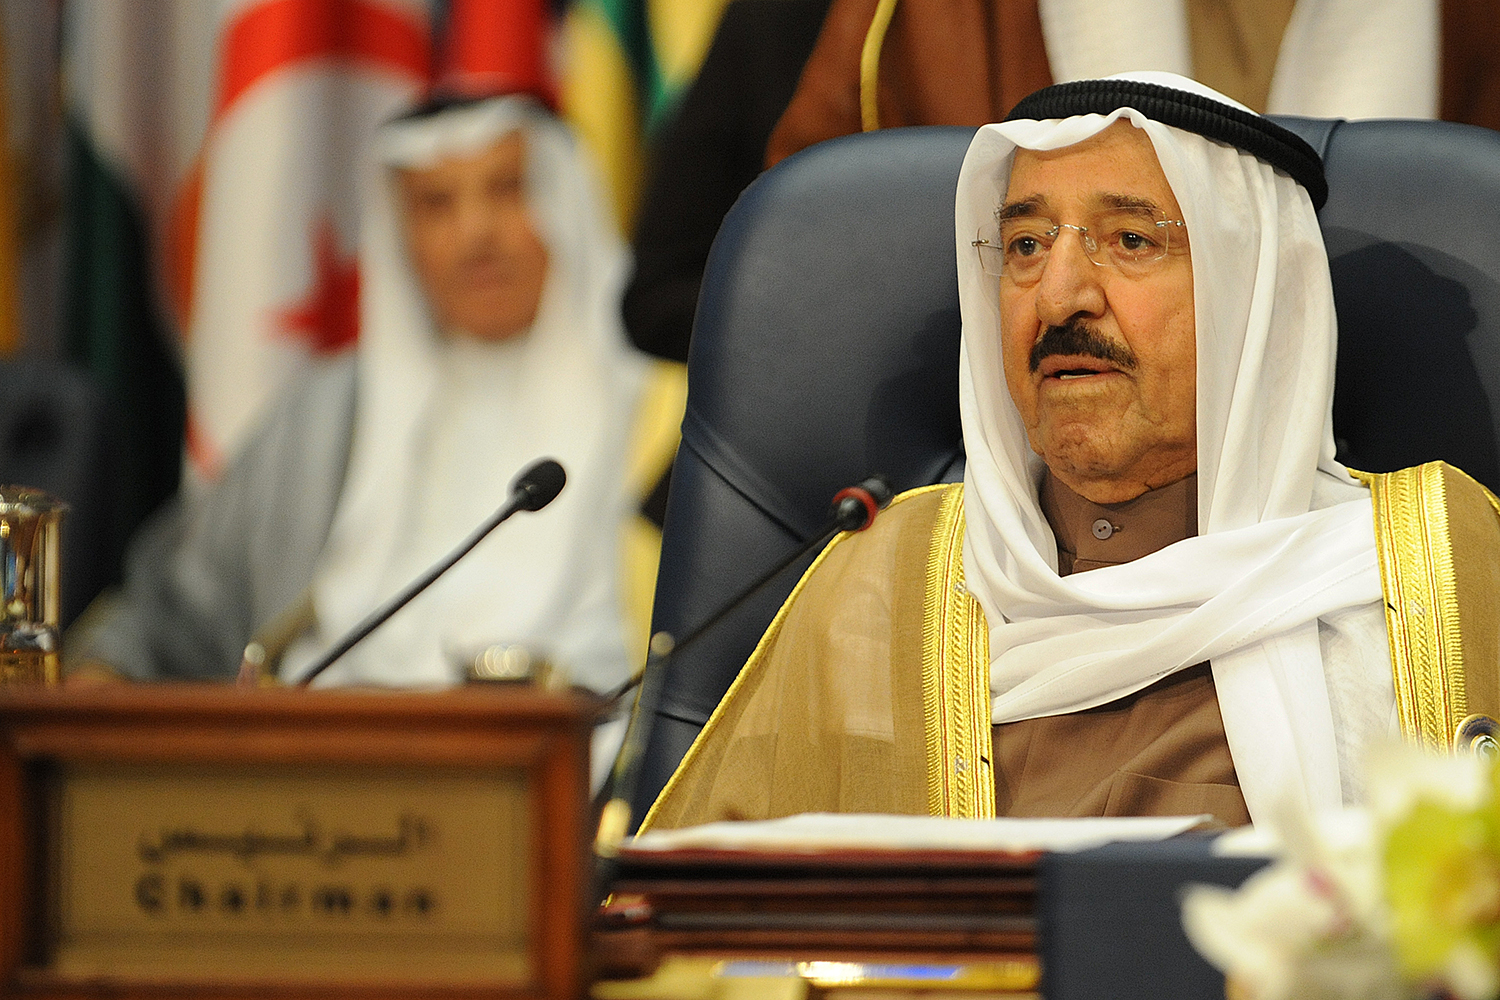 انطلاق اعمال القمة العربية في الكويت